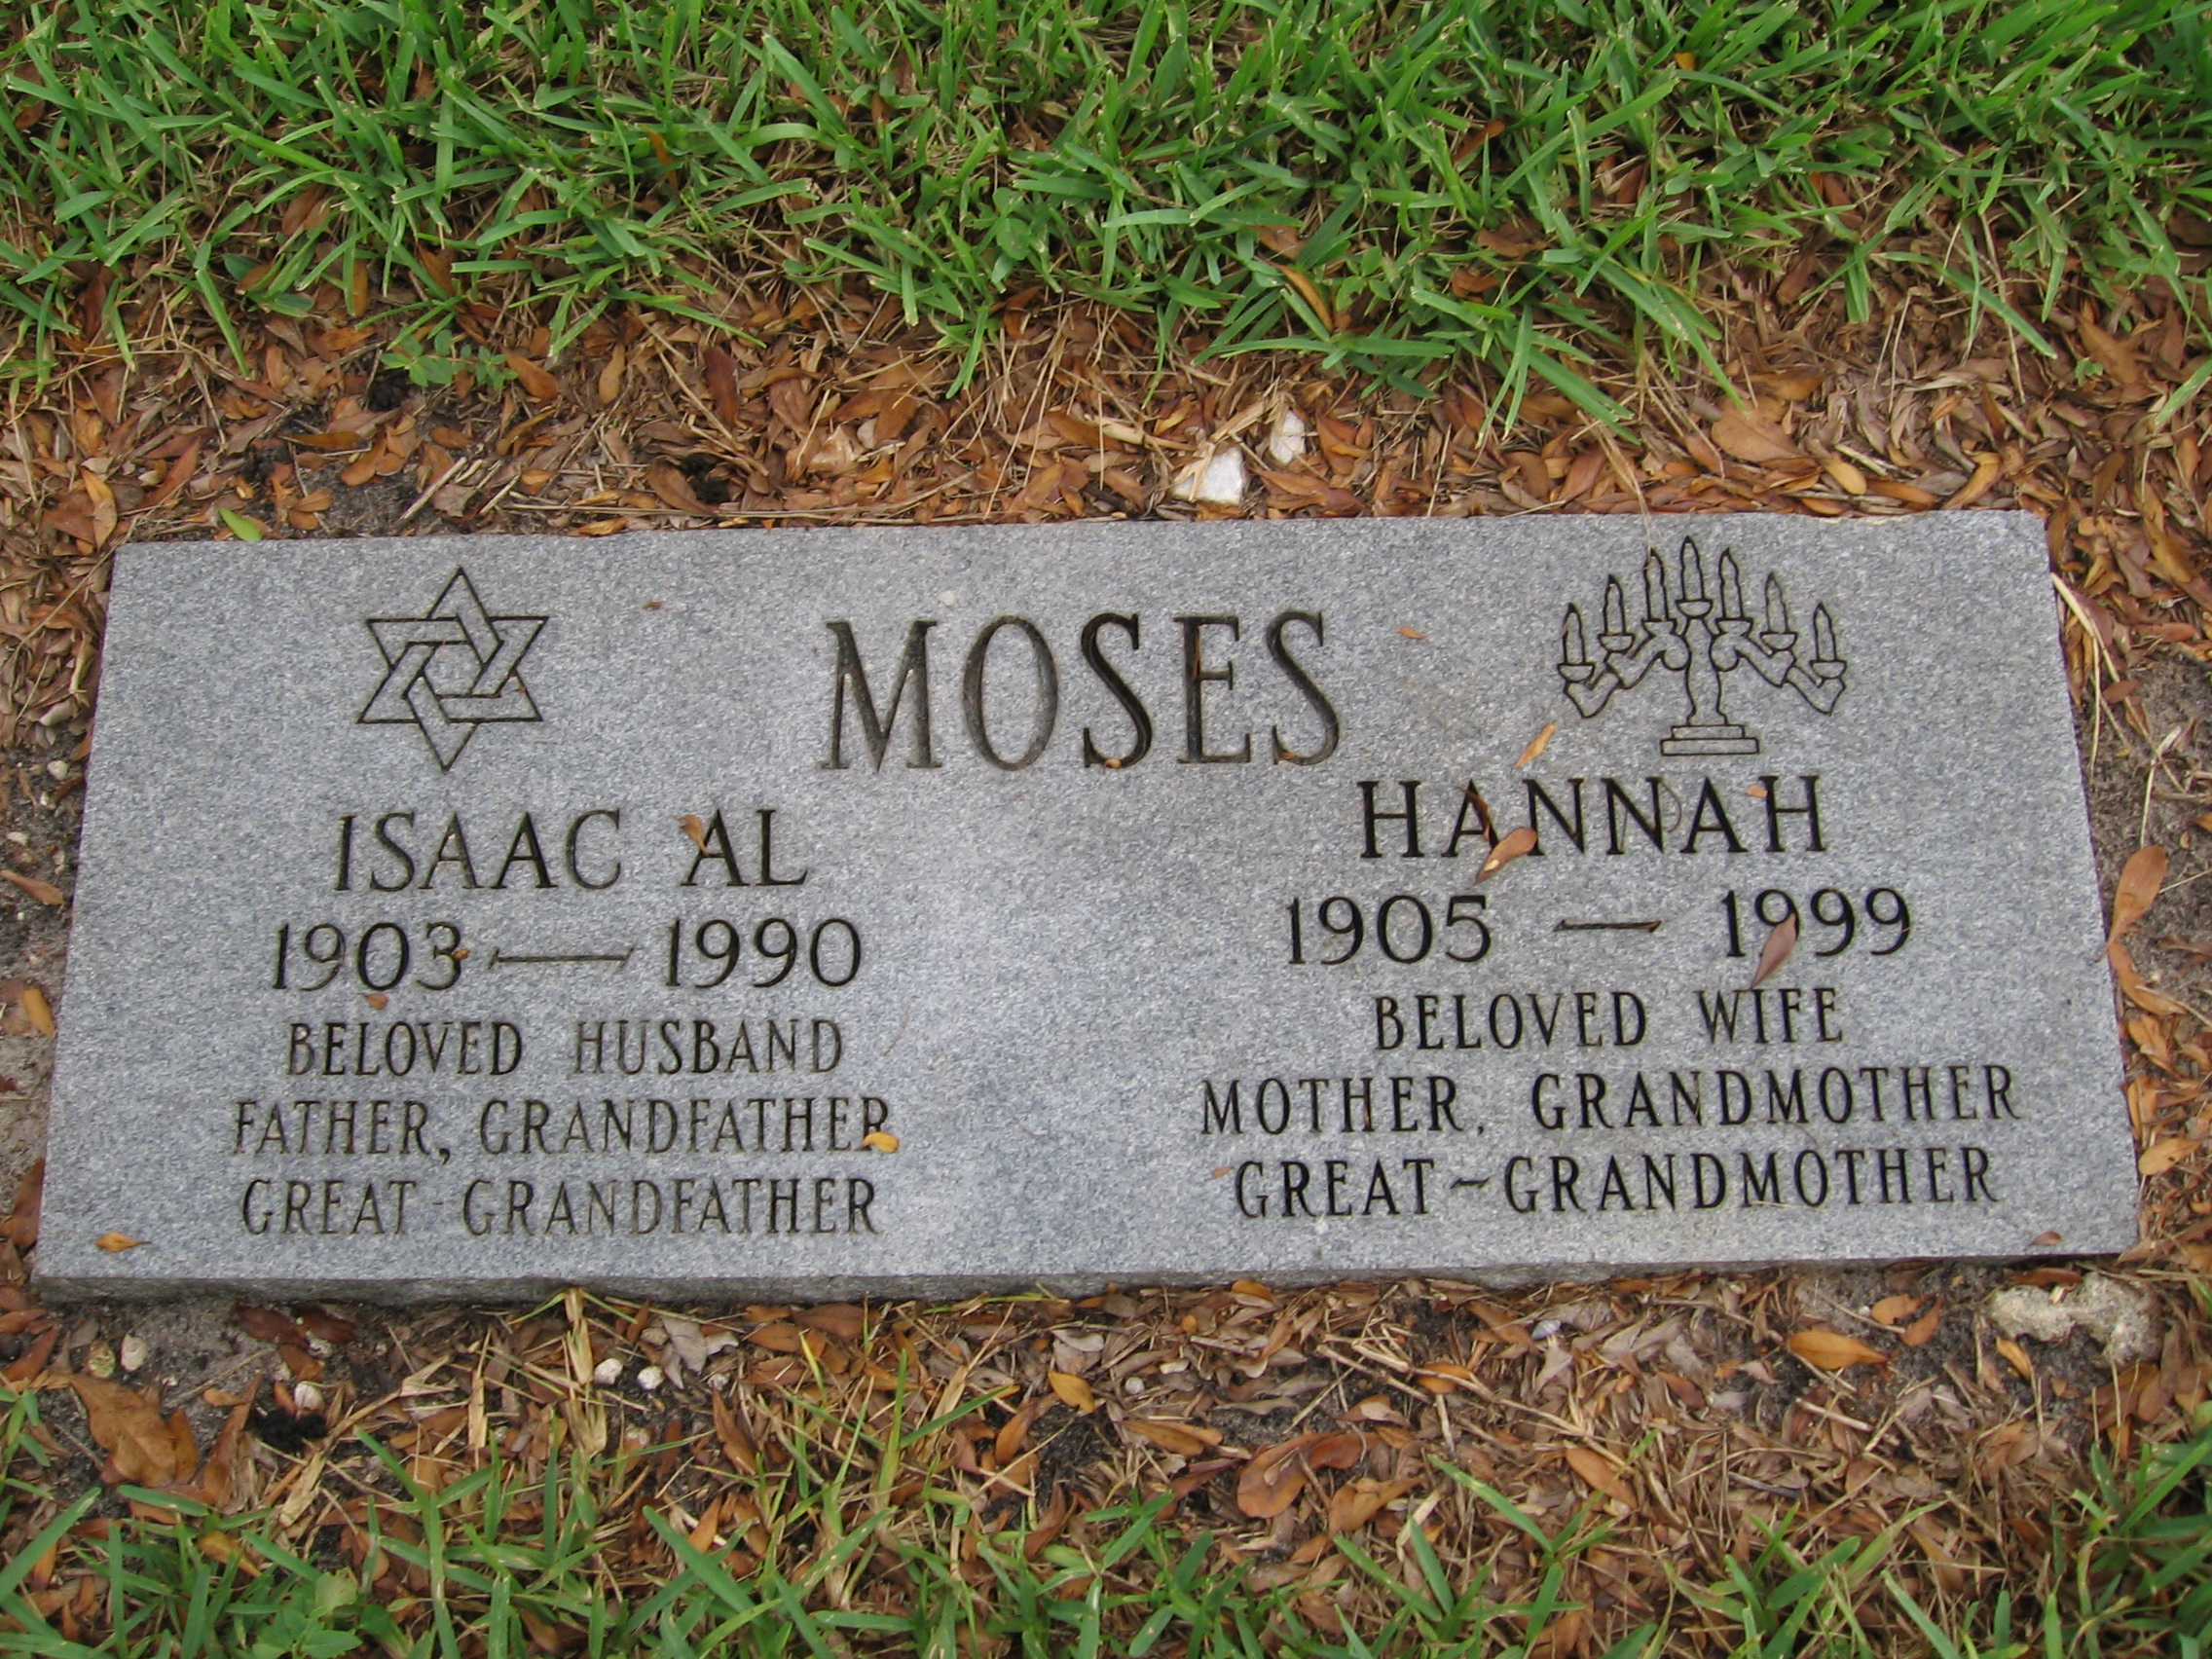 Hannah Moses